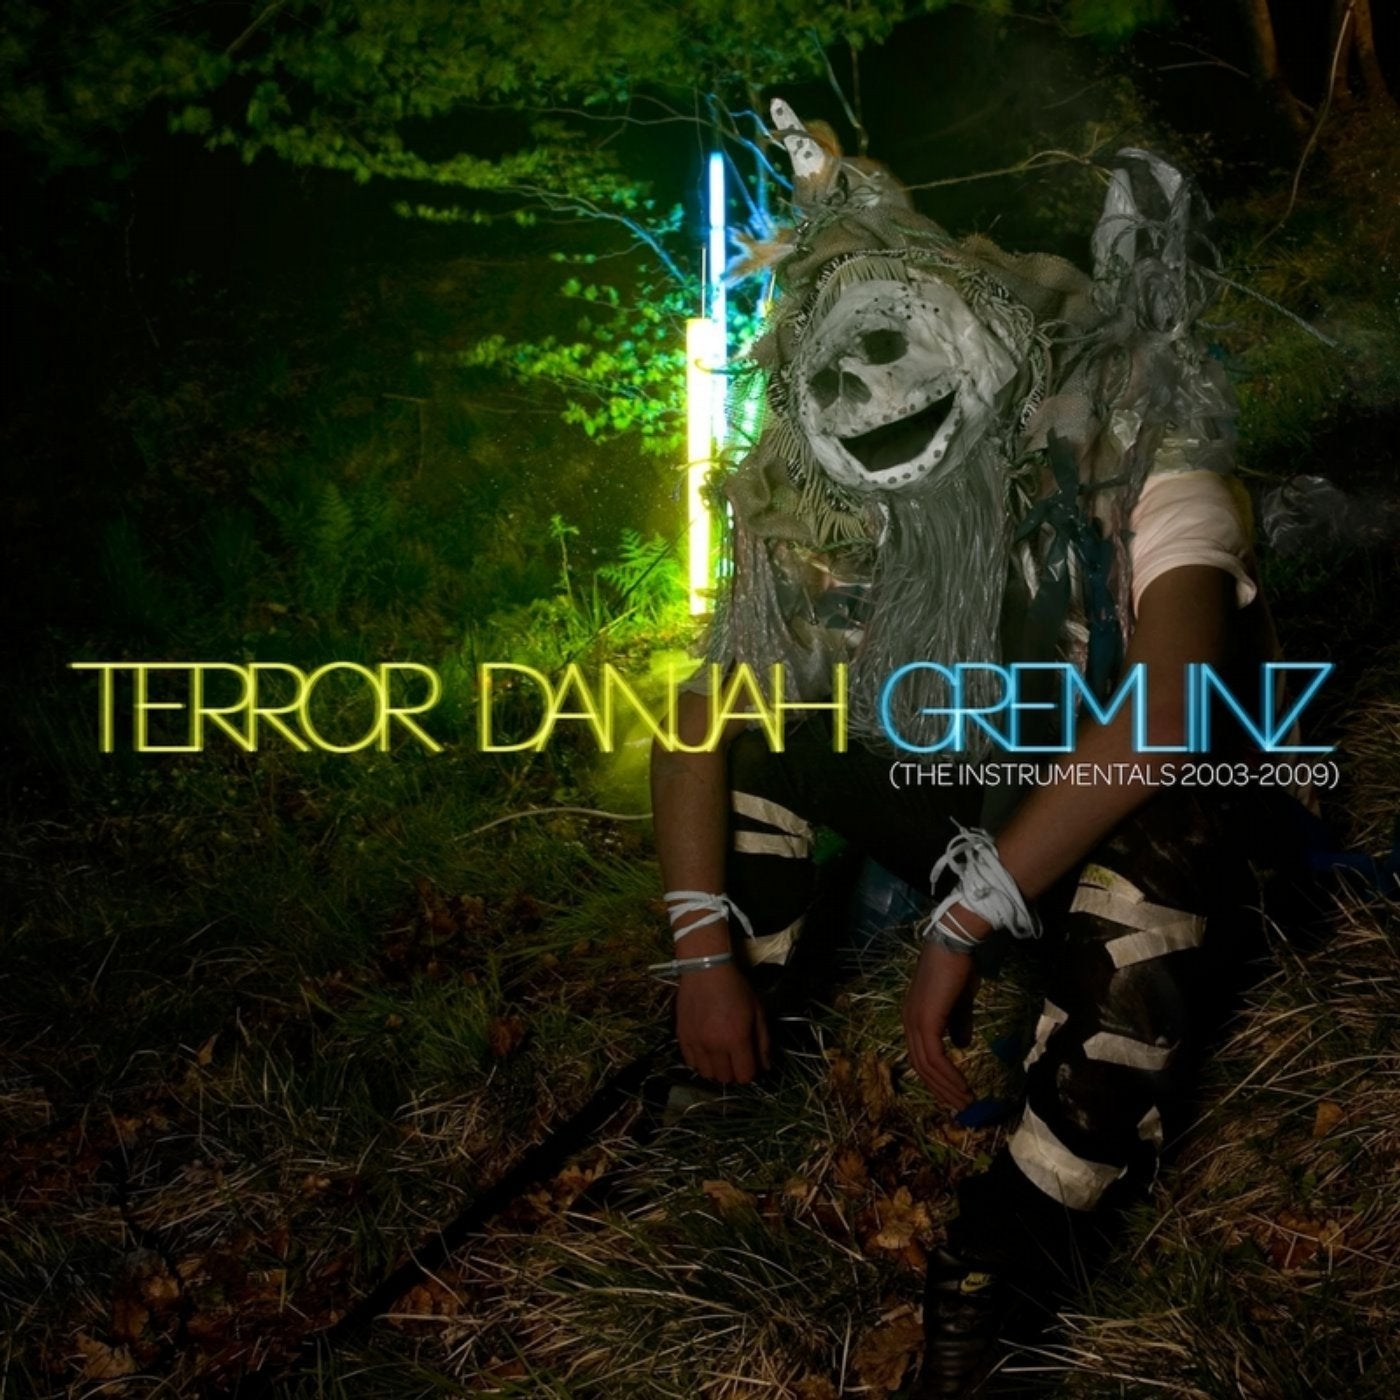 Gremlinz (The Instrumentals 2003-2009)